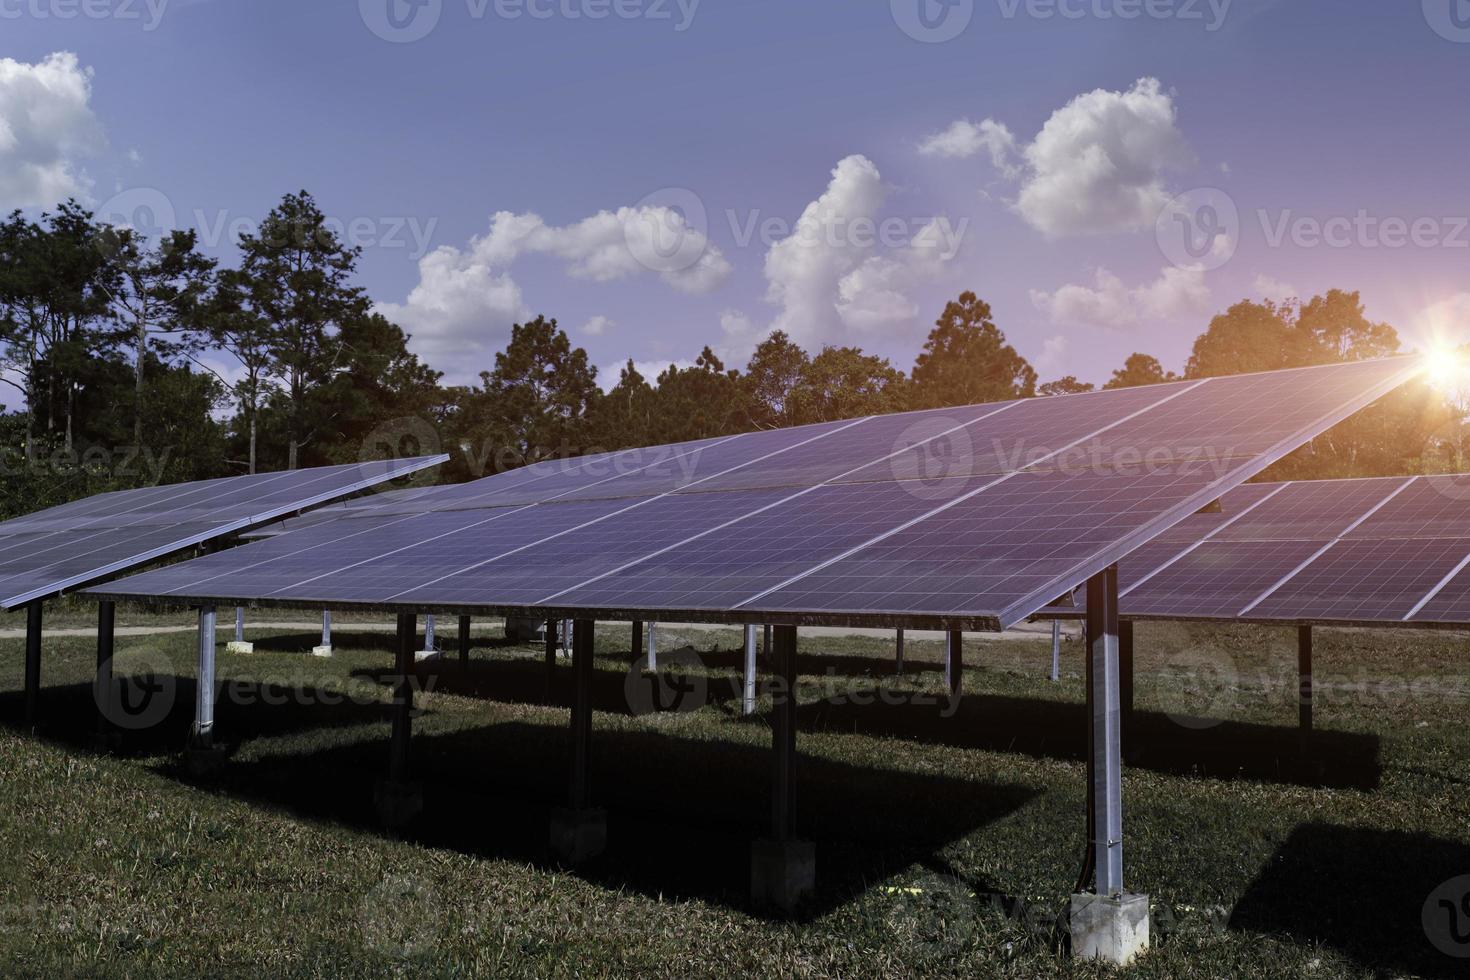 painel solar, fotovoltaica, fonte de eletricidade alternativa. recursos sustentáveis. conceito de energia de energia alternativa. foto